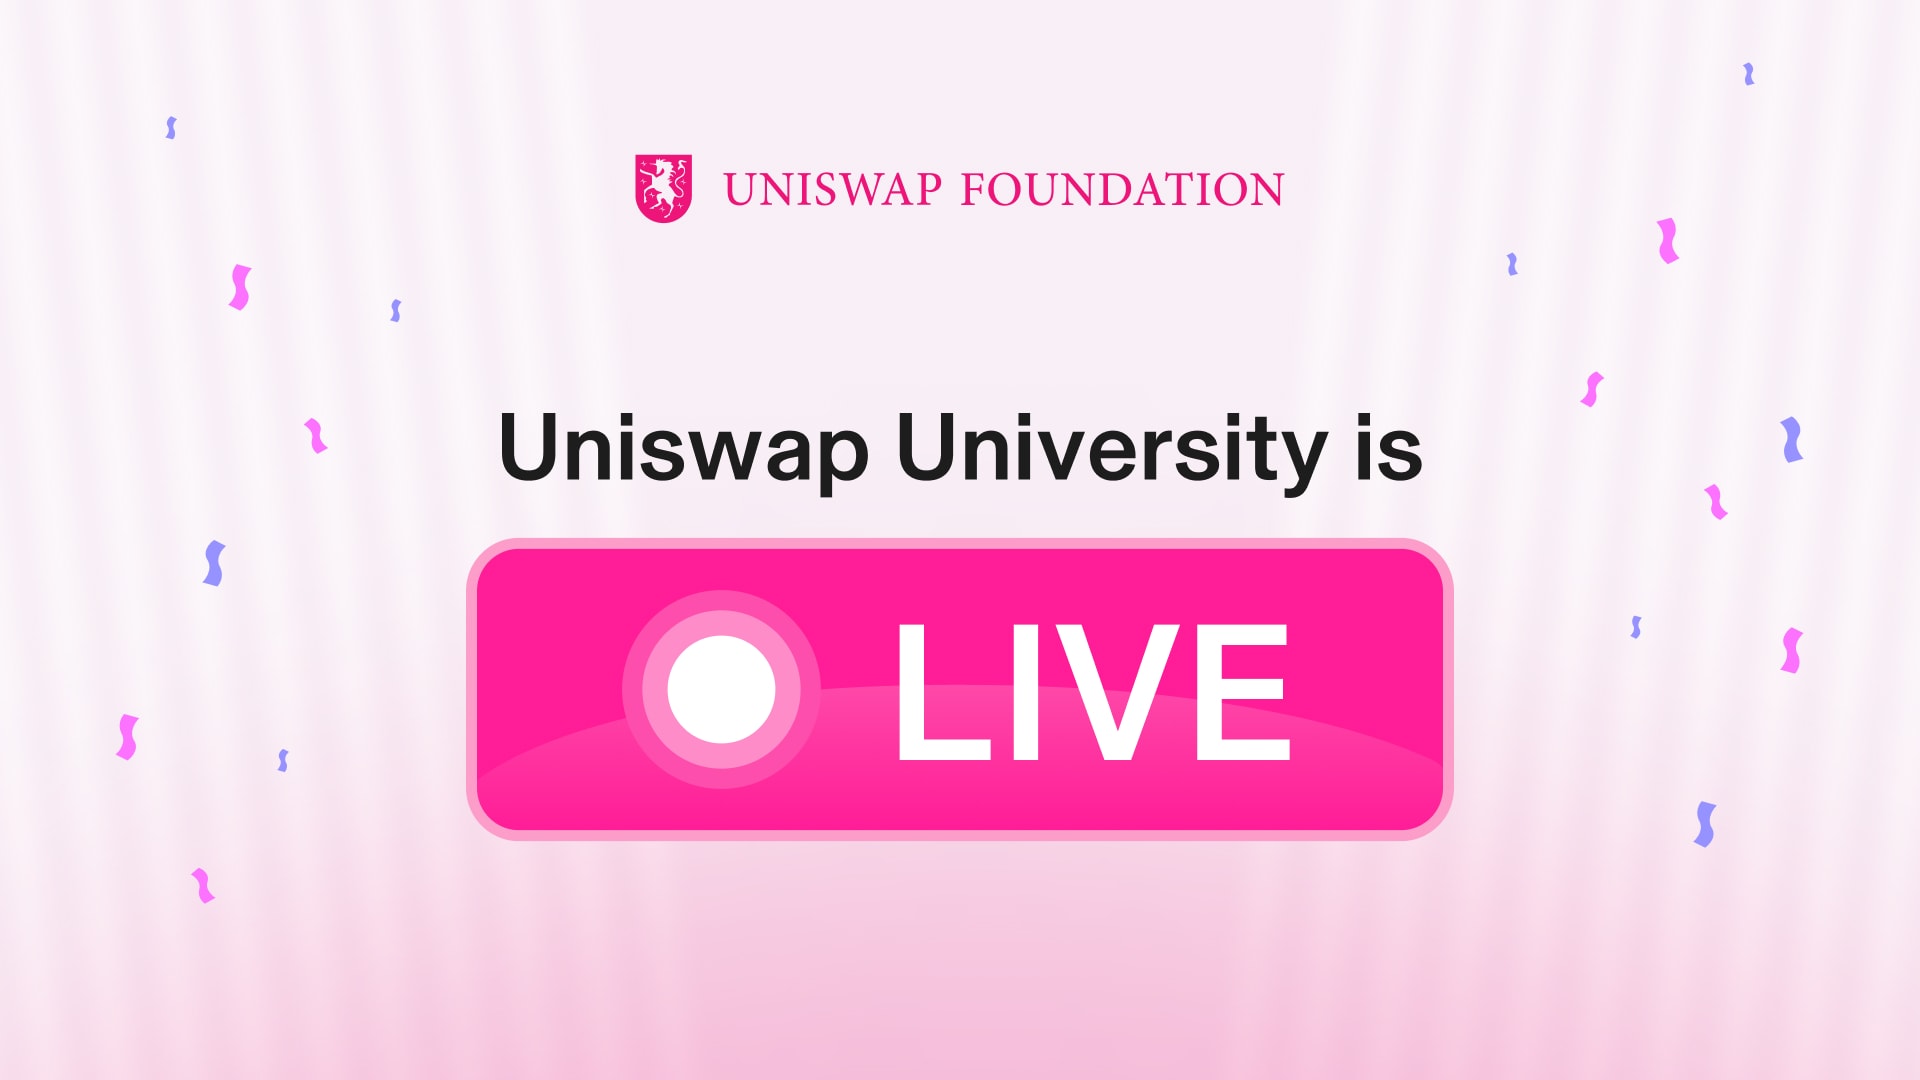 Uniswap university, le programme éducatif pour les utilisateurs d'Uniswap